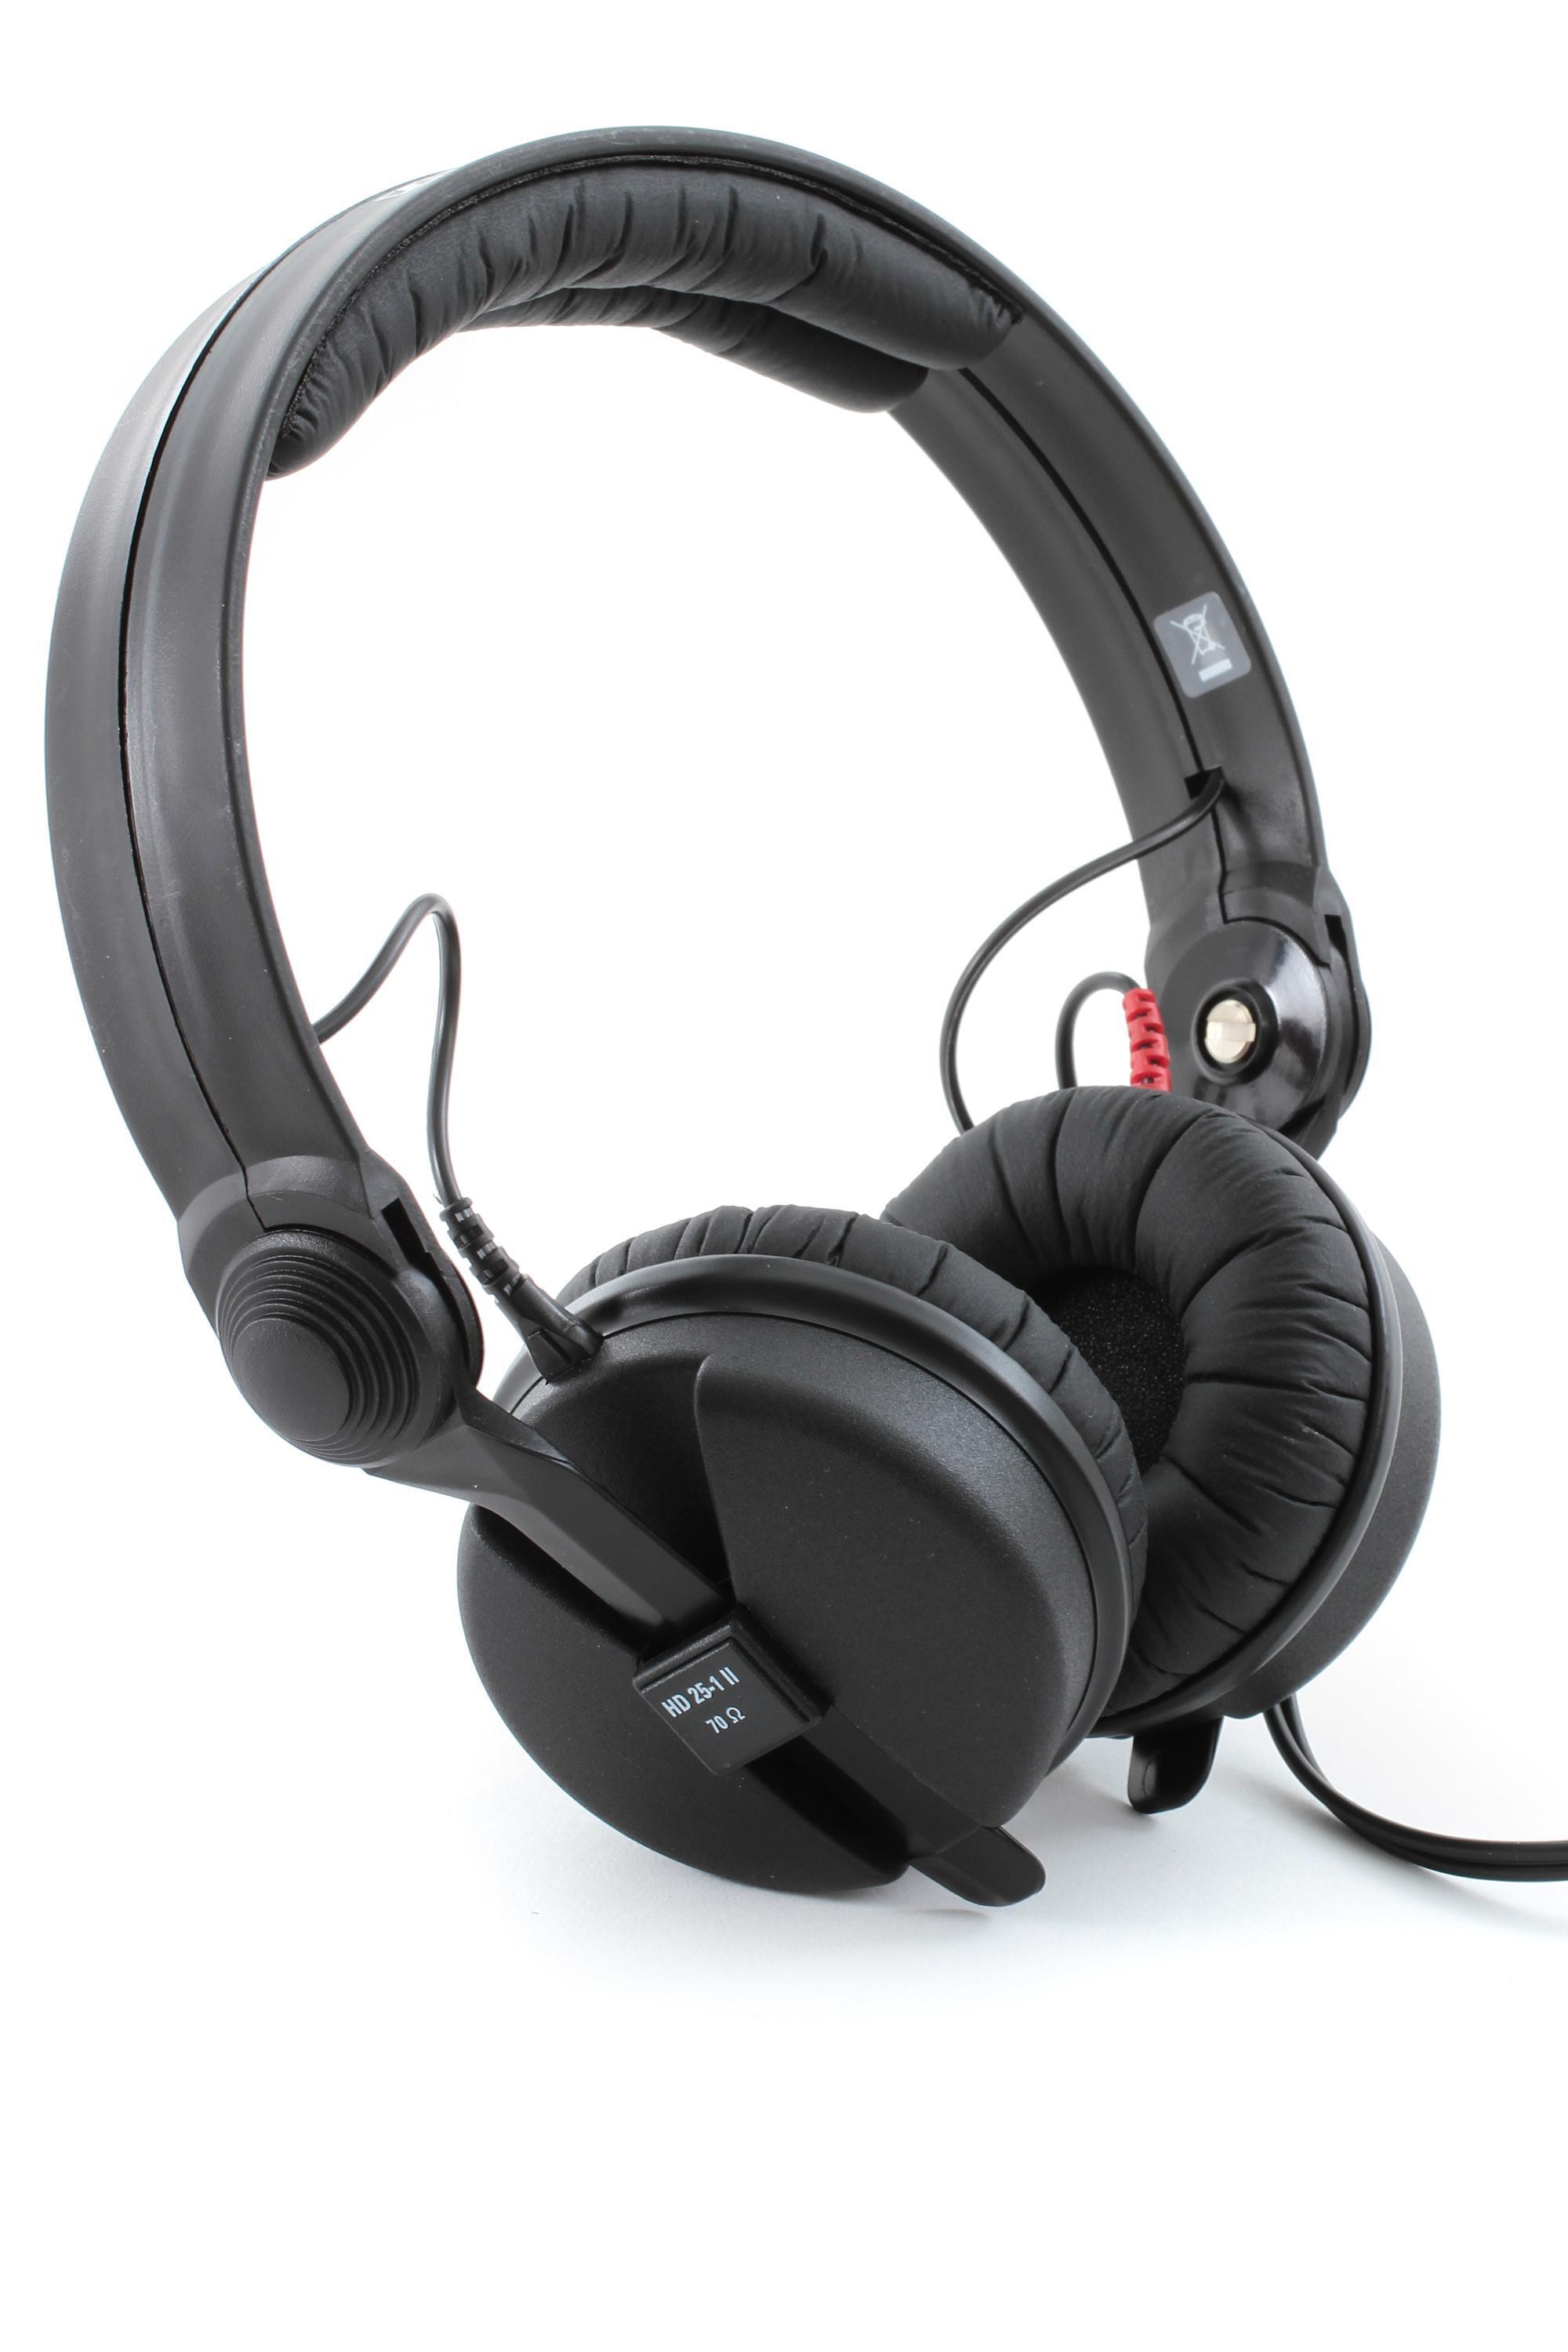 Sennheiser HD 25-1 II On-Ear Studio Headphones - Closed